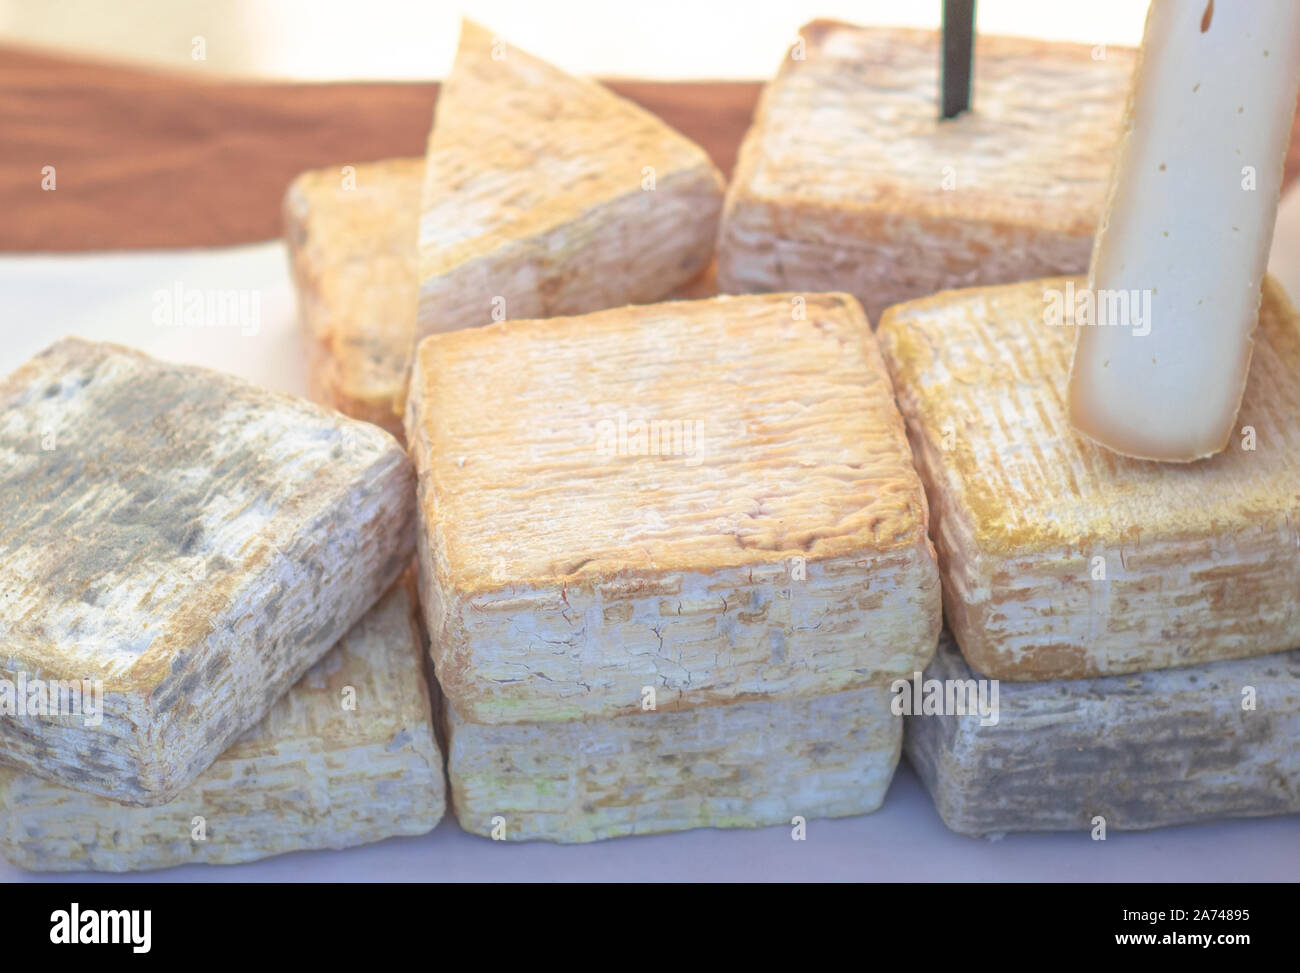 Formes de artisanal italien exquis fromage fait avec du lait de chèvre Banque D'Images